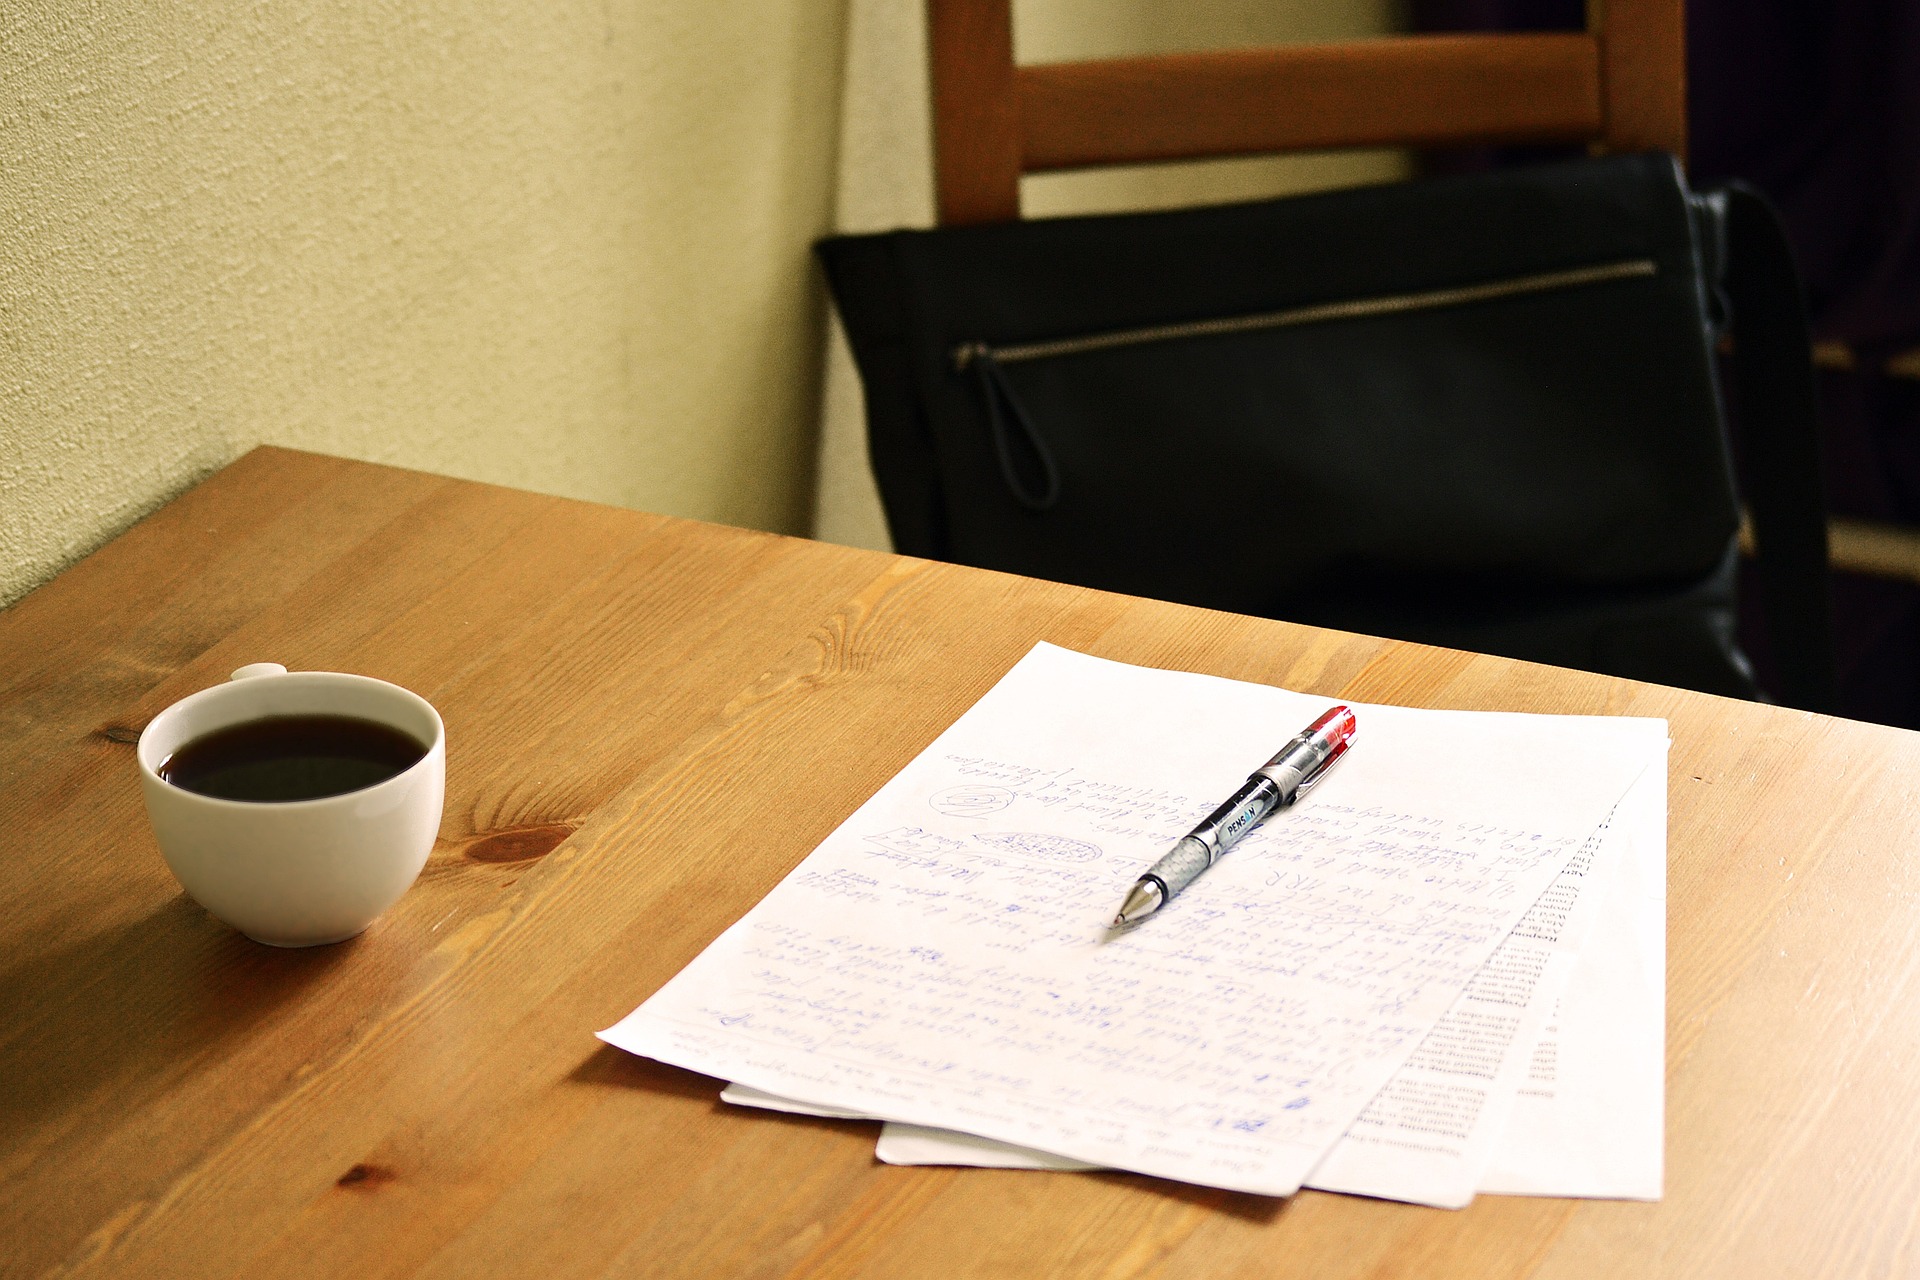 Na obrázku jsou na stole položené papíry a na nich pero, vedle stojí šálek s kávou